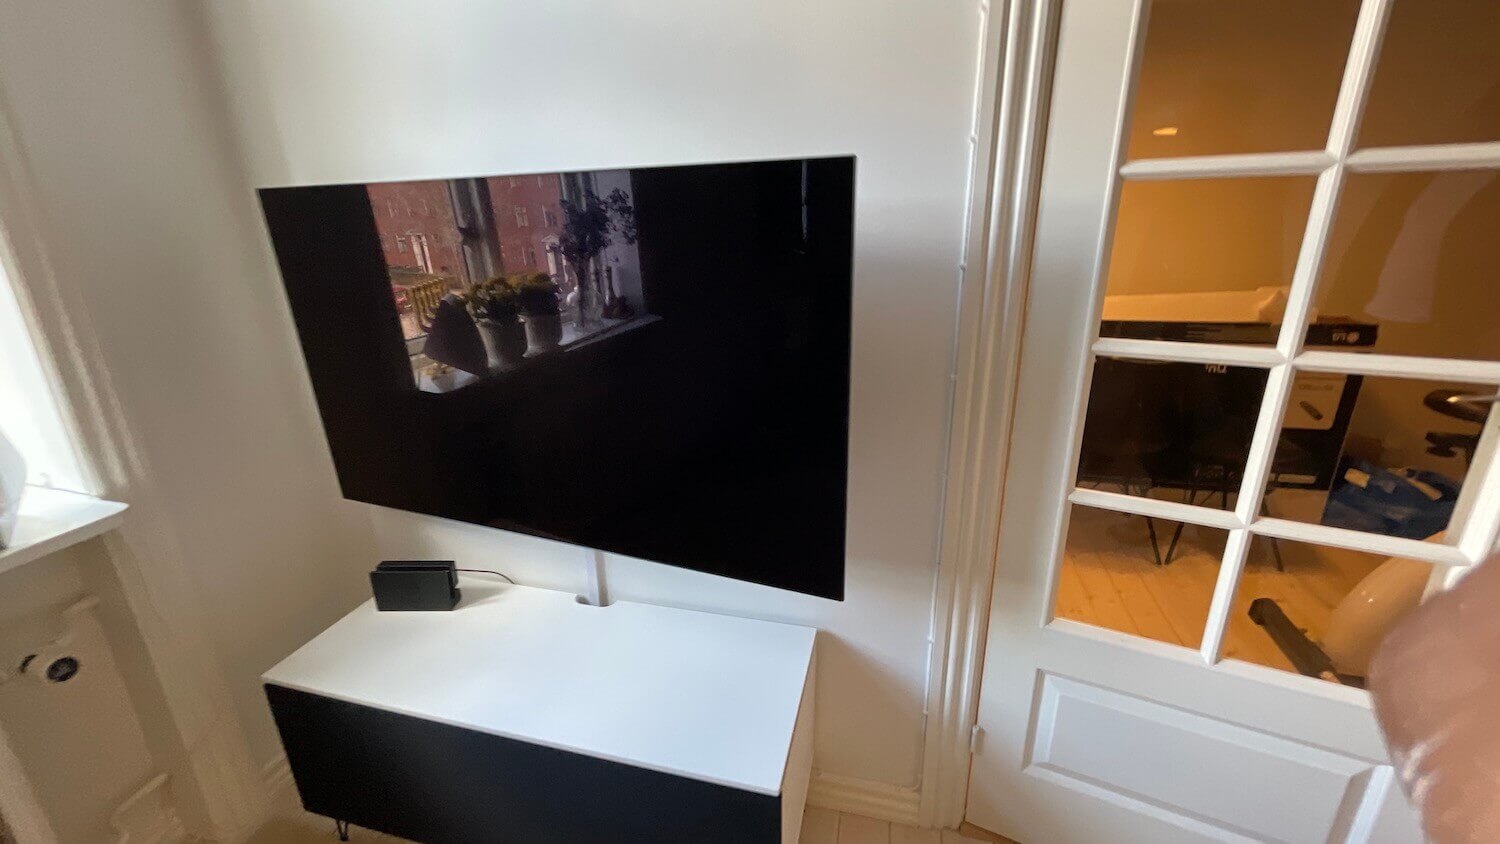 Montering af 55 LG OLED TV på et vægbeslag med drejefunktion